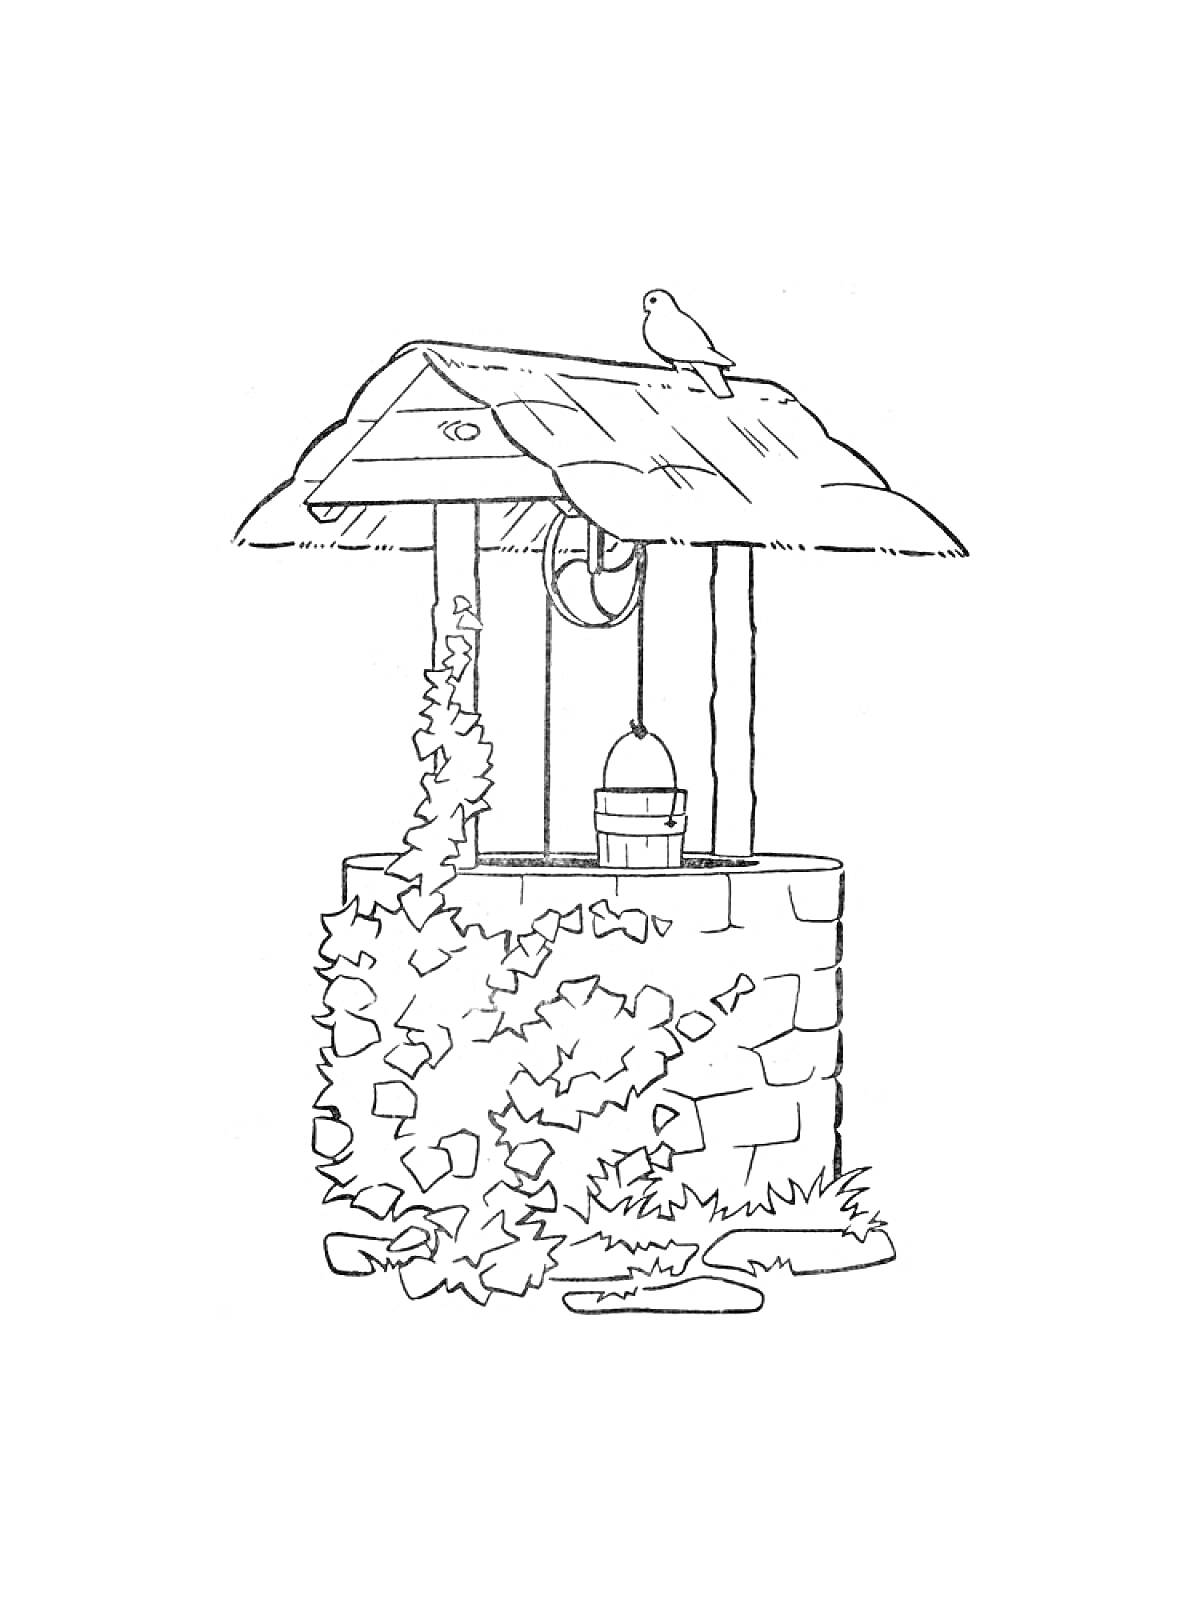 Раскраска Каменный колодец с крышей, ведром, виноградной лозой и сидящей птицей на крыше